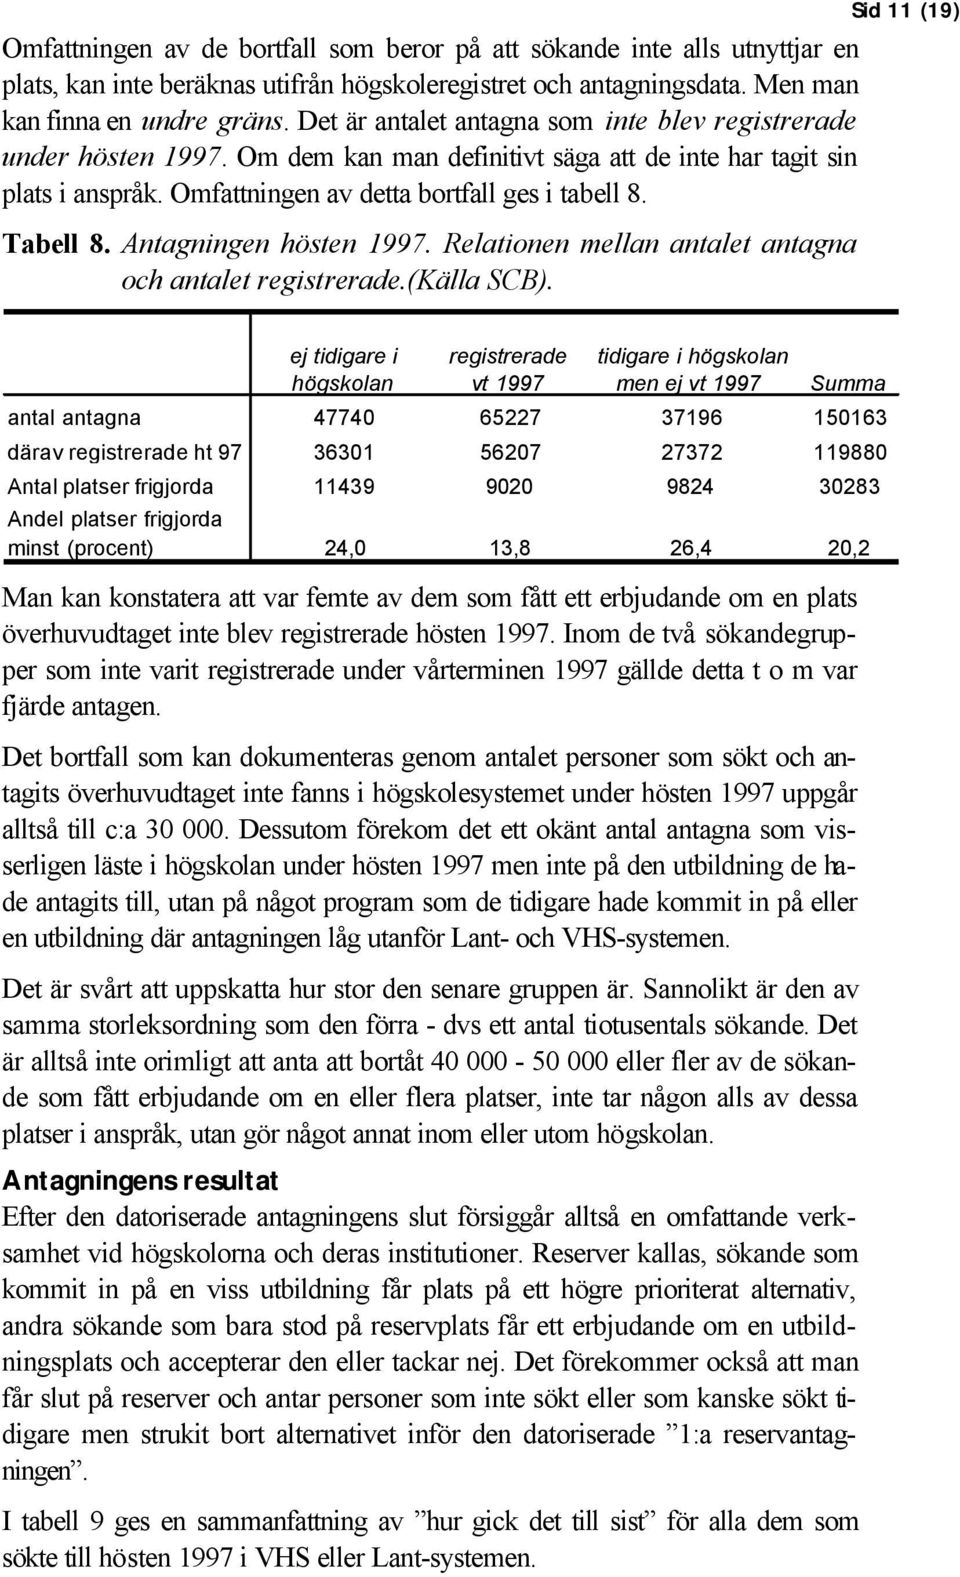 Antagningen hösten 1997. Relationen mellan antalet antagna och antalet.(källa SCB).